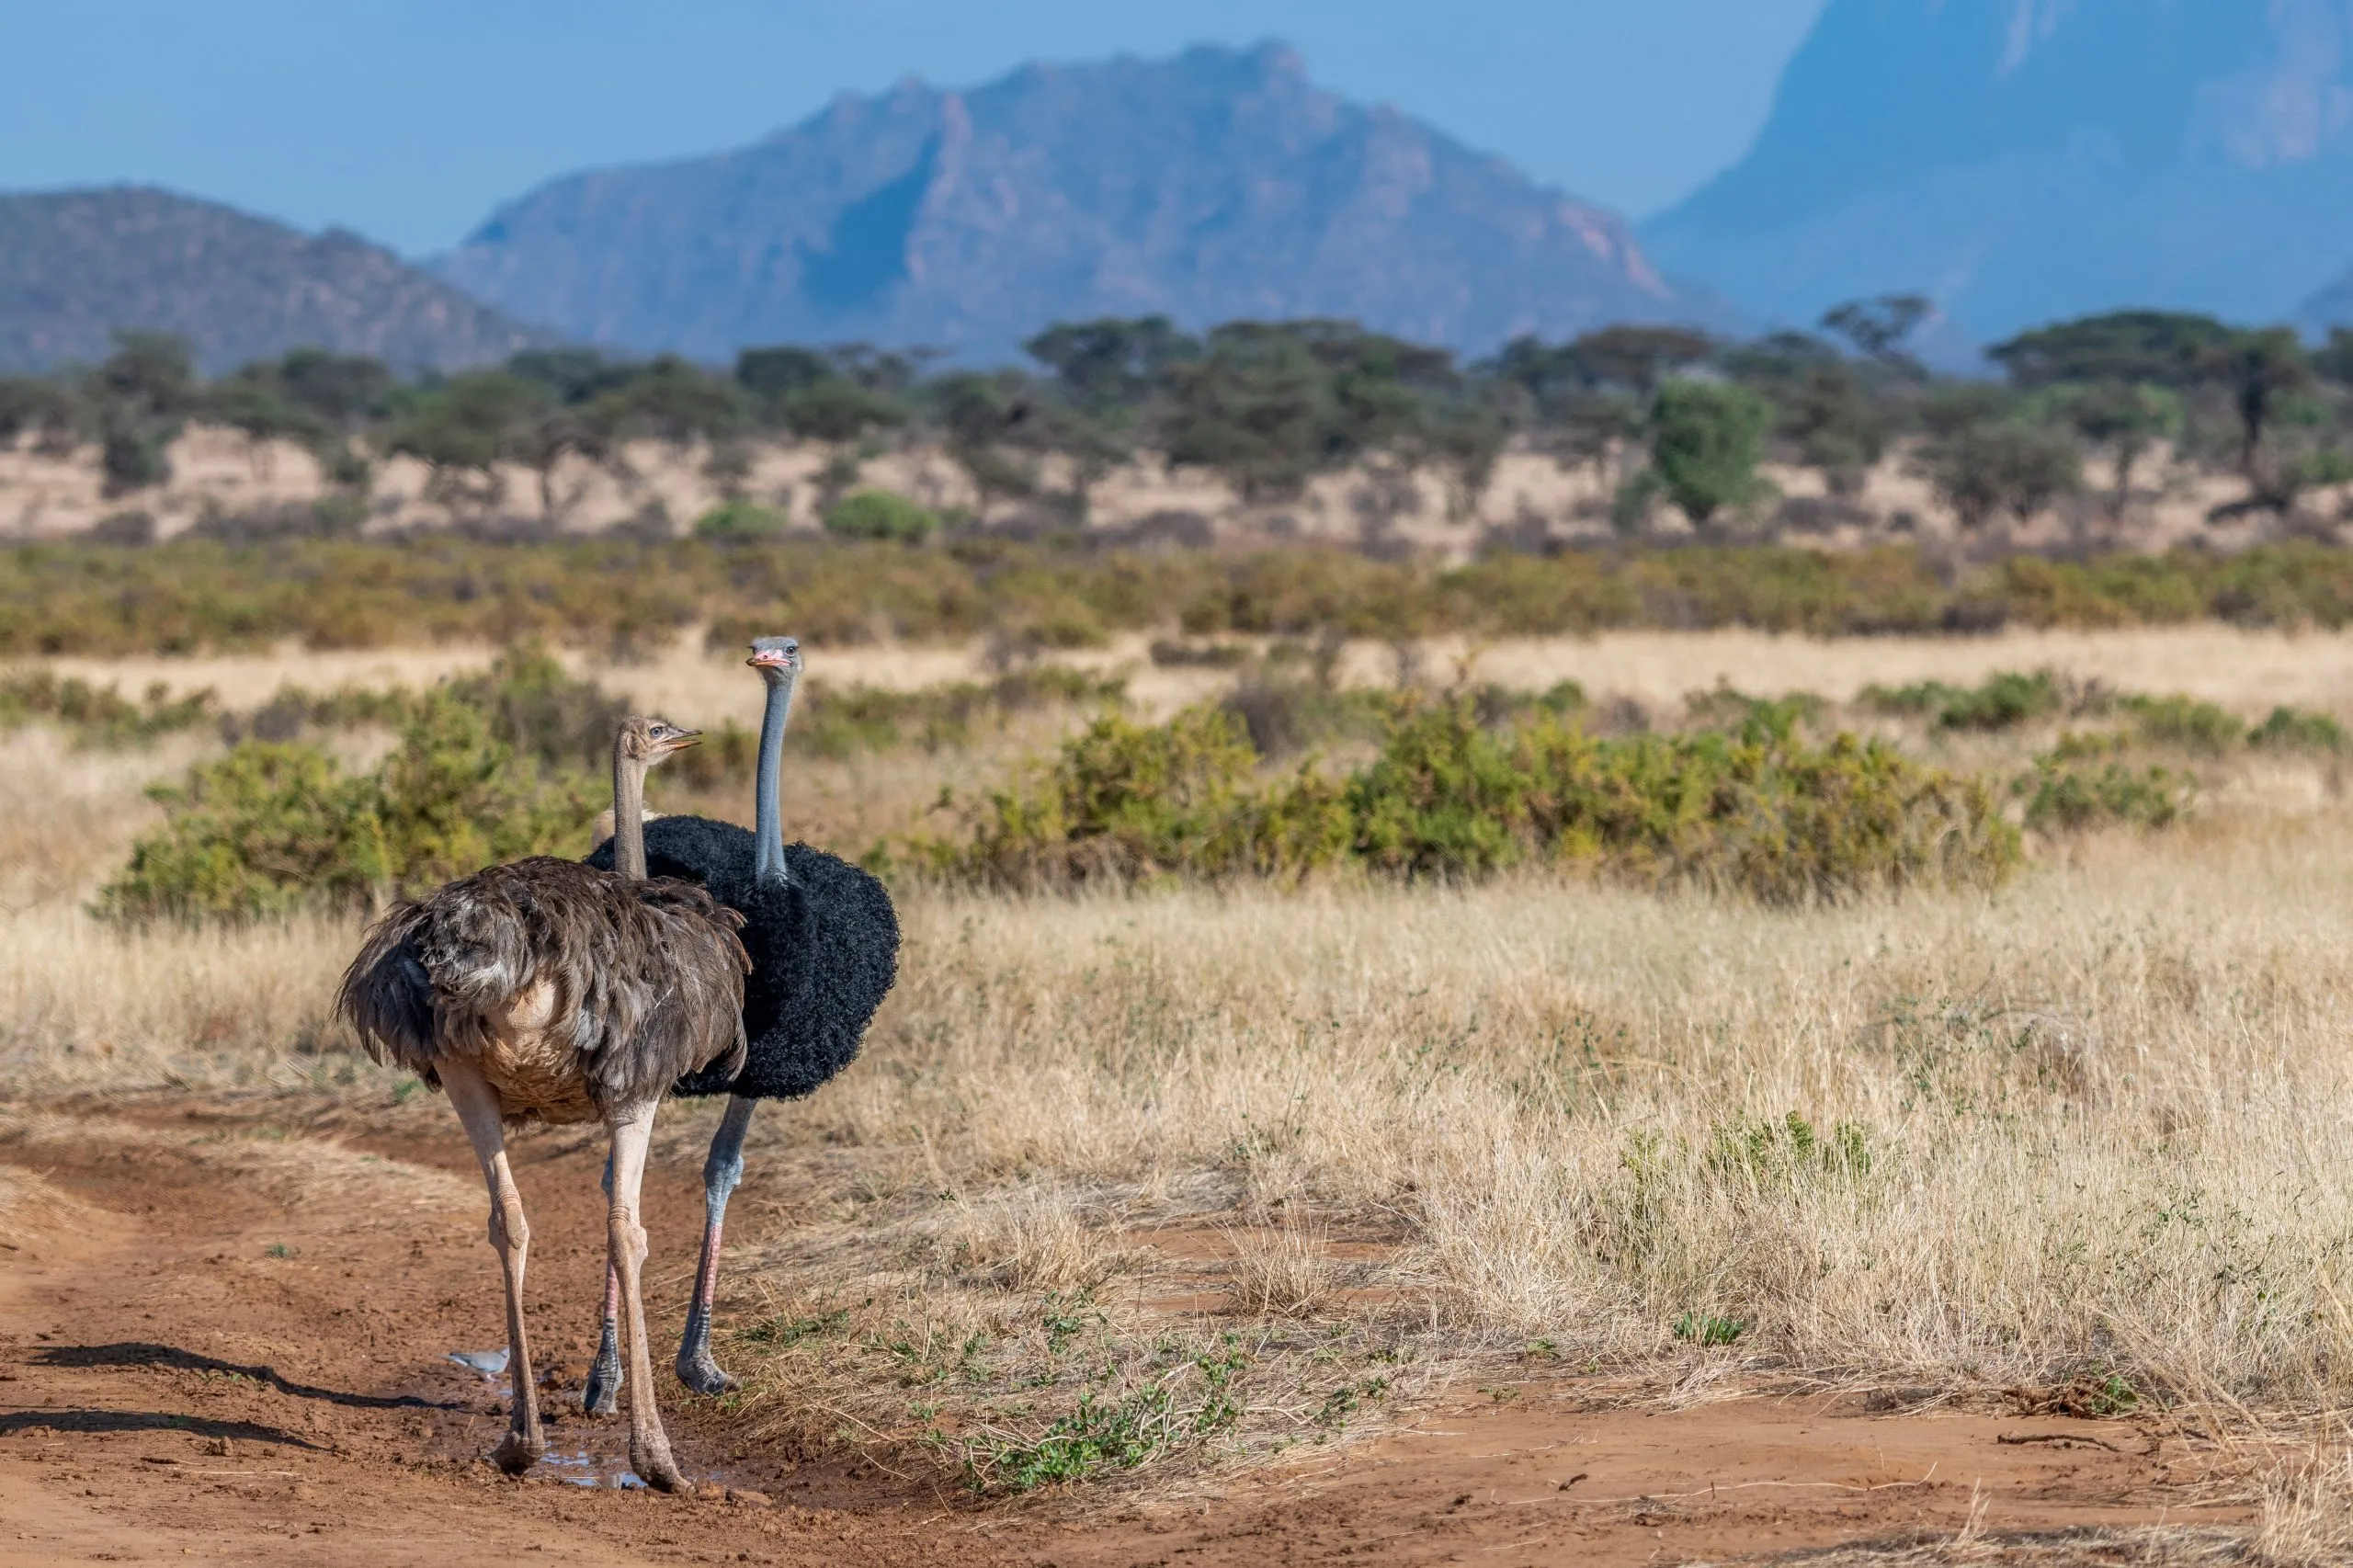 Halvtørt landskap i Samburu nasjonalreservat i Kenya. Sjeldne hanner og hunner av somalisk struts i forgrunnen. Et par som parer seg. Hudfargen på halsen og lårene er gråblå. En enorm fugl som ikke kan fly. Afrika.